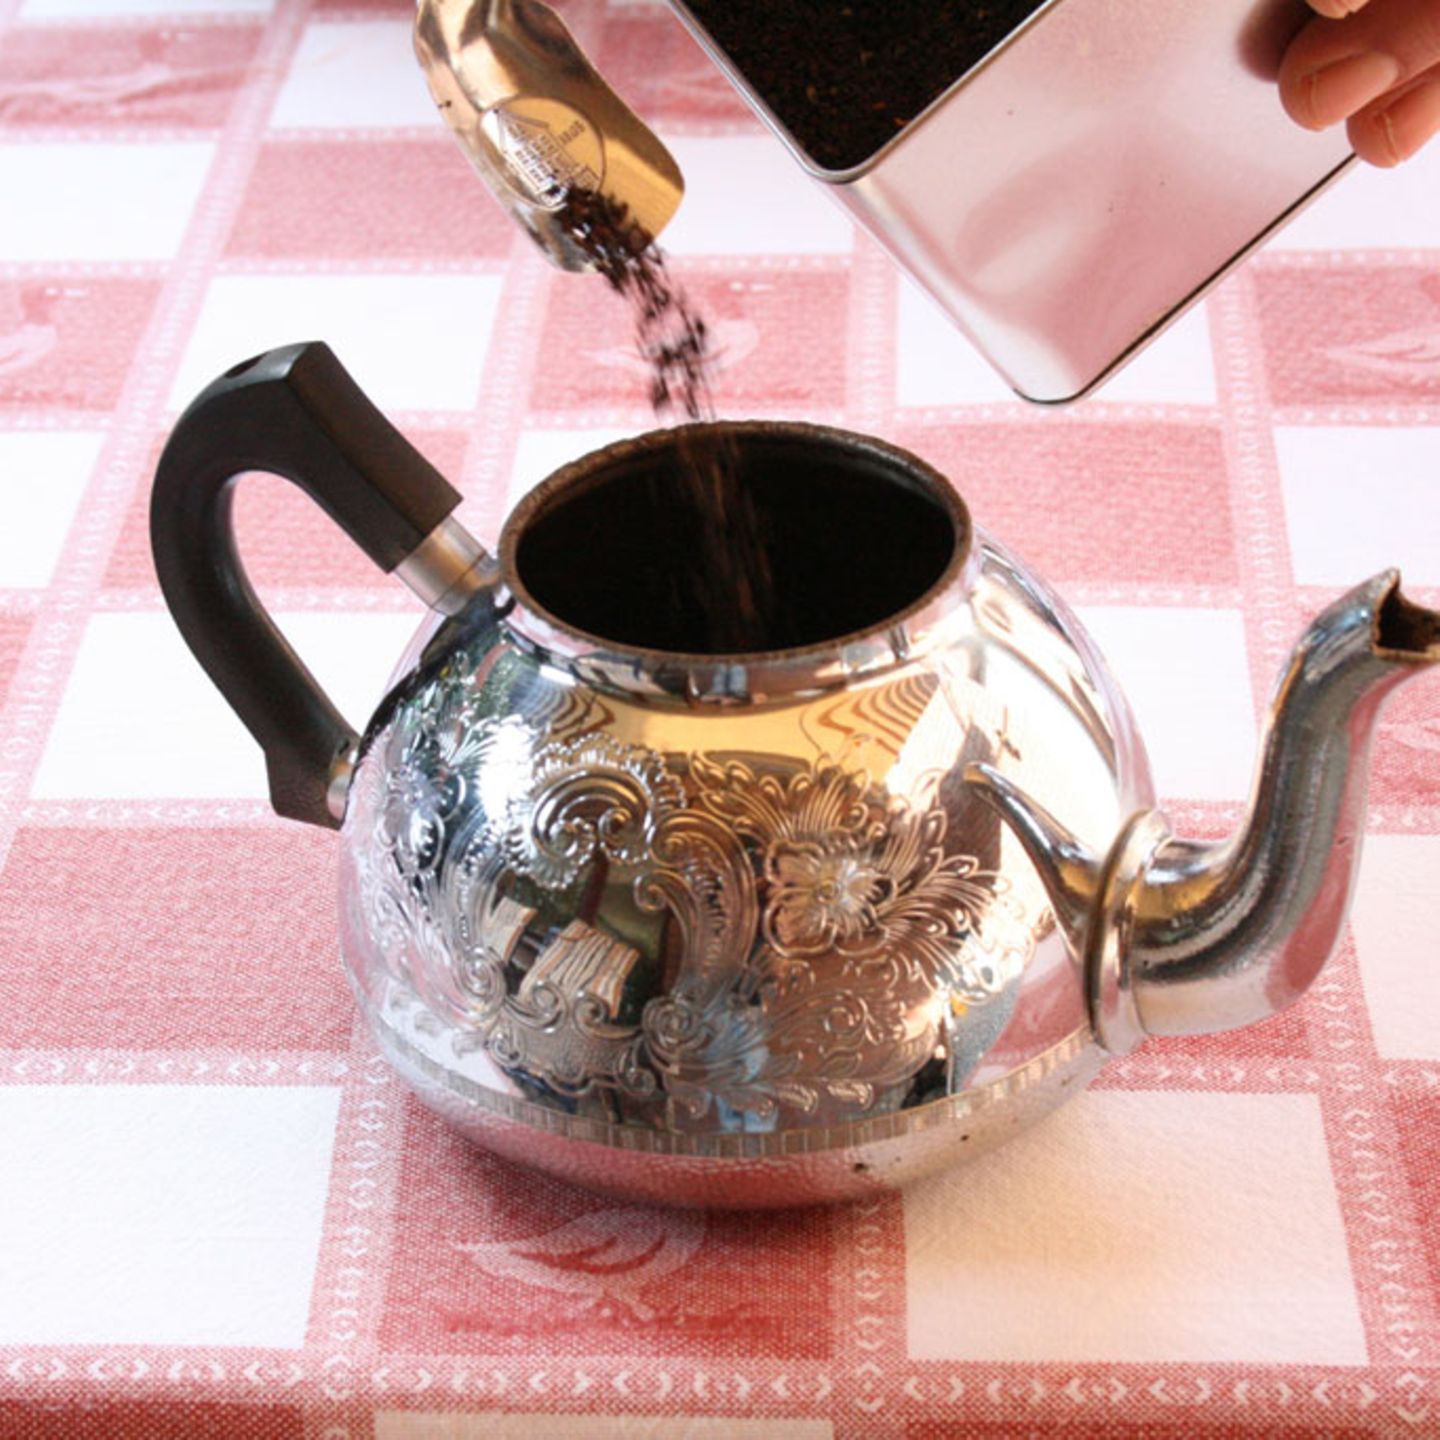 Zunächst wird die Kanne (Trekkpott) durch Ausspülen mit kochendem Wasser angewärmt, damit der Tee auch wirklich heiß ist. Danach wird der Tee in die Kanne gefüllt (pro Tasse einen kleinen ostfriesischen Teelöffel und am Ende einen Teelöffel für die Kanne).